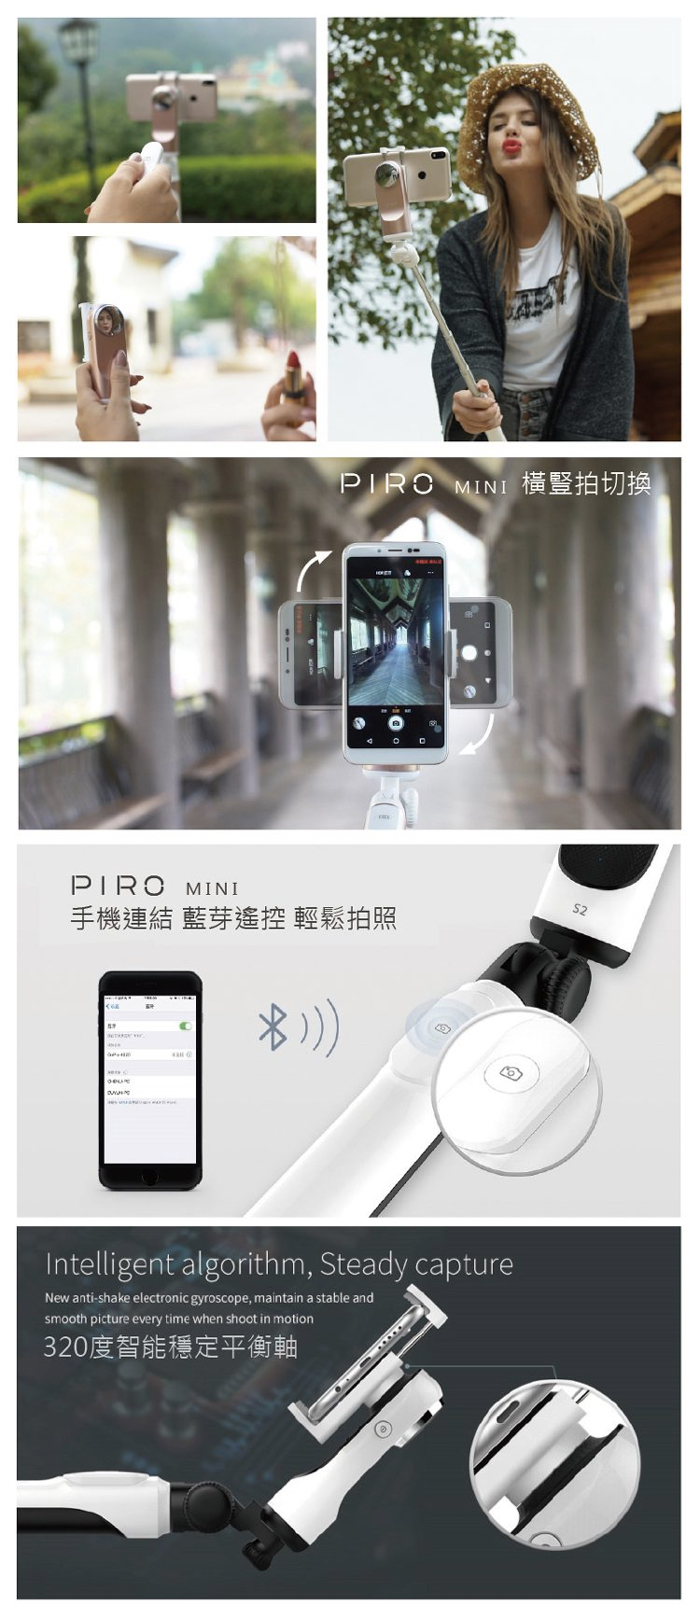 02 Luxy Star 台灣 Piro Mini 超袖珍拍攝穩定器 Searching C hk Hong Kong 香港